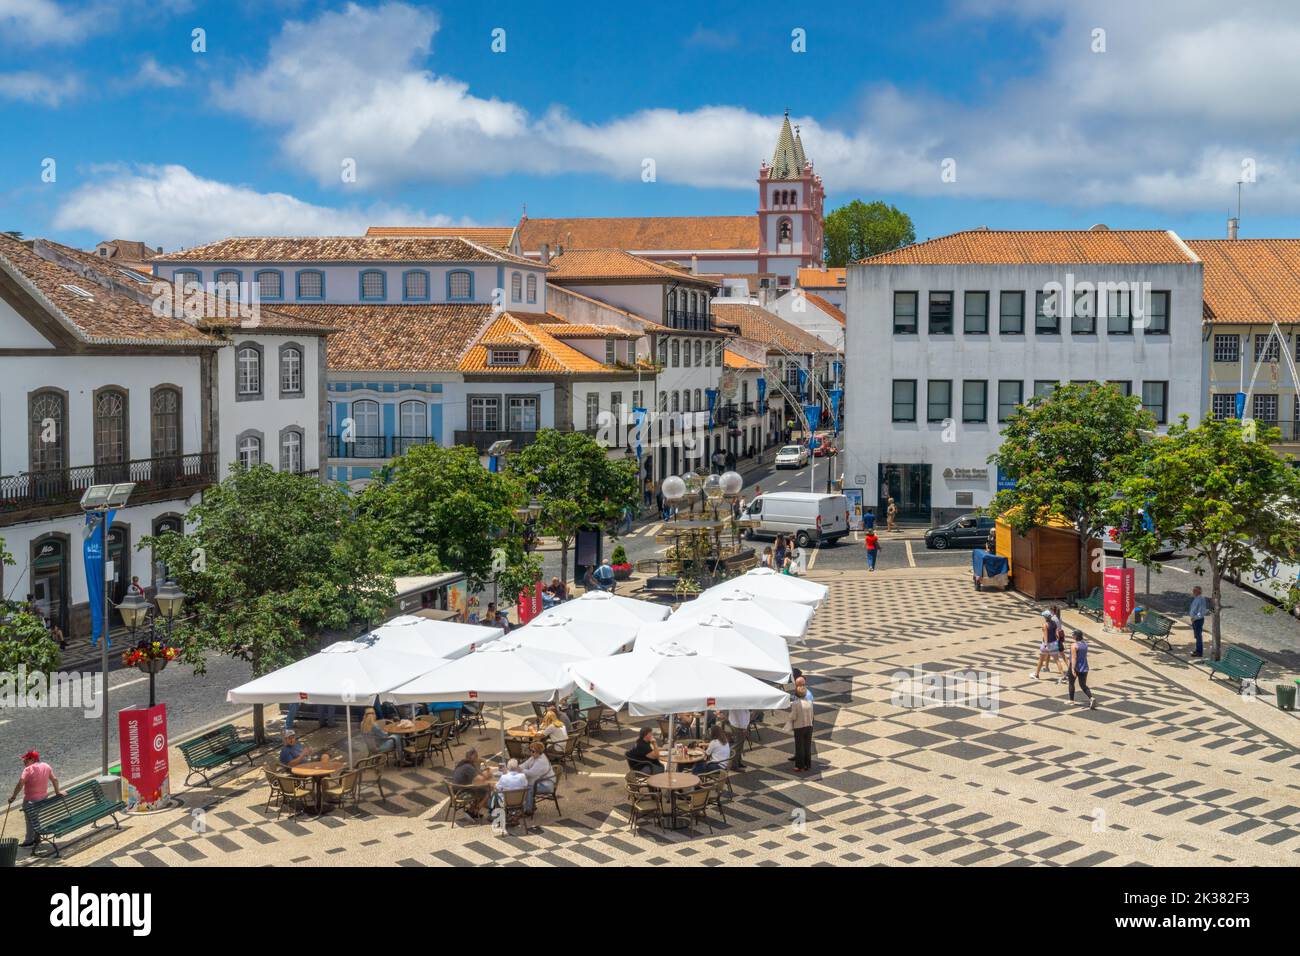 La piazza centrale conosciuta come Praca Velha con caffè all'aperto nel centro storico della città di Angra do Heroismo, Terceira Island, Azzorre, Portogallo. Foto Stock